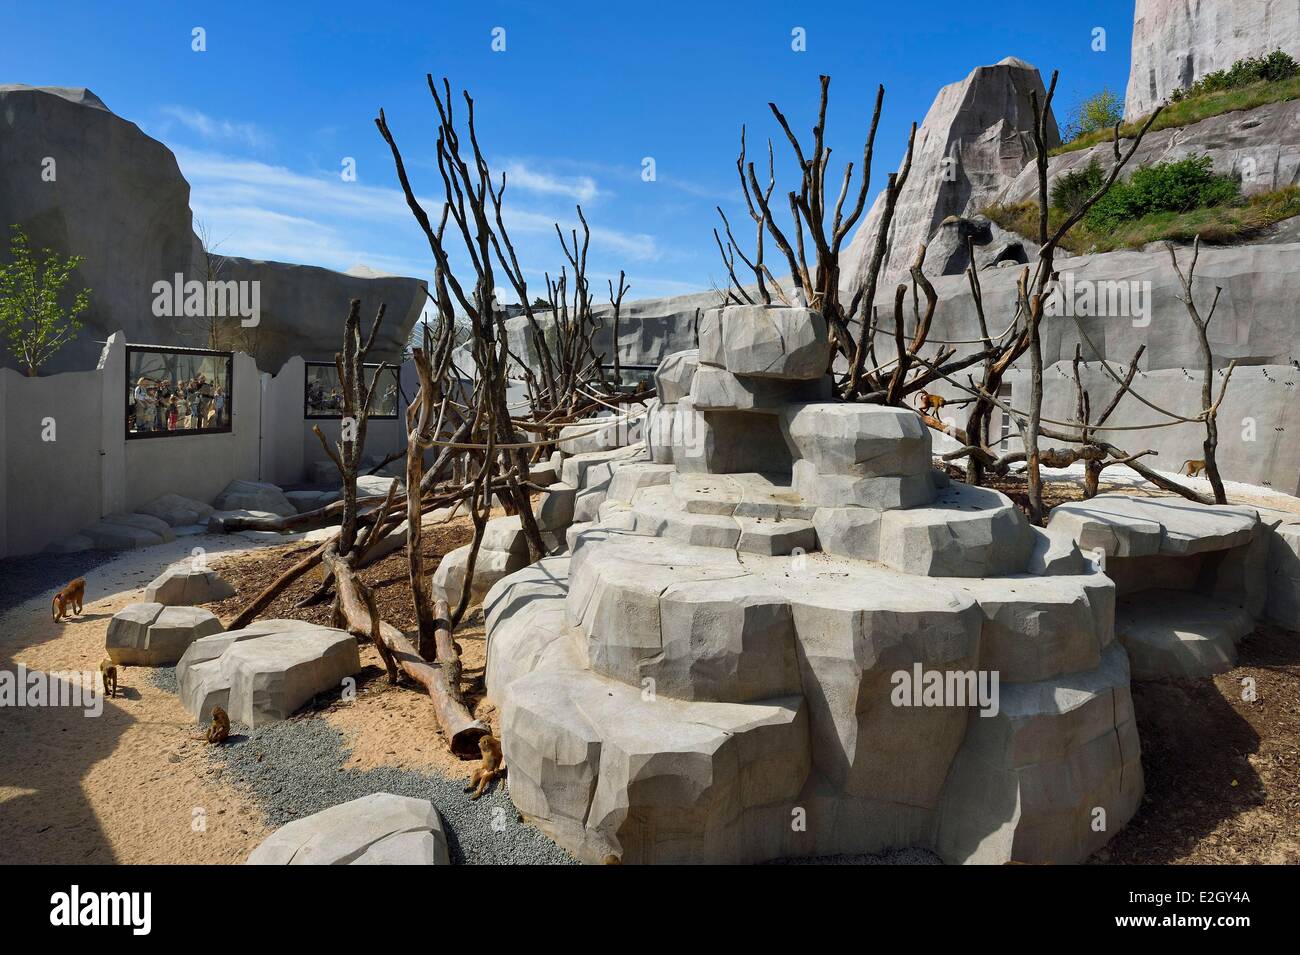 France Paris Paris Zoological Park (Zoo de Vincennes) Sahel-Sudan biozone Guinea baboons (Papio papio) in a large enclosure under Grand Rock that is landmark of zoo since 1934 Stock Photo